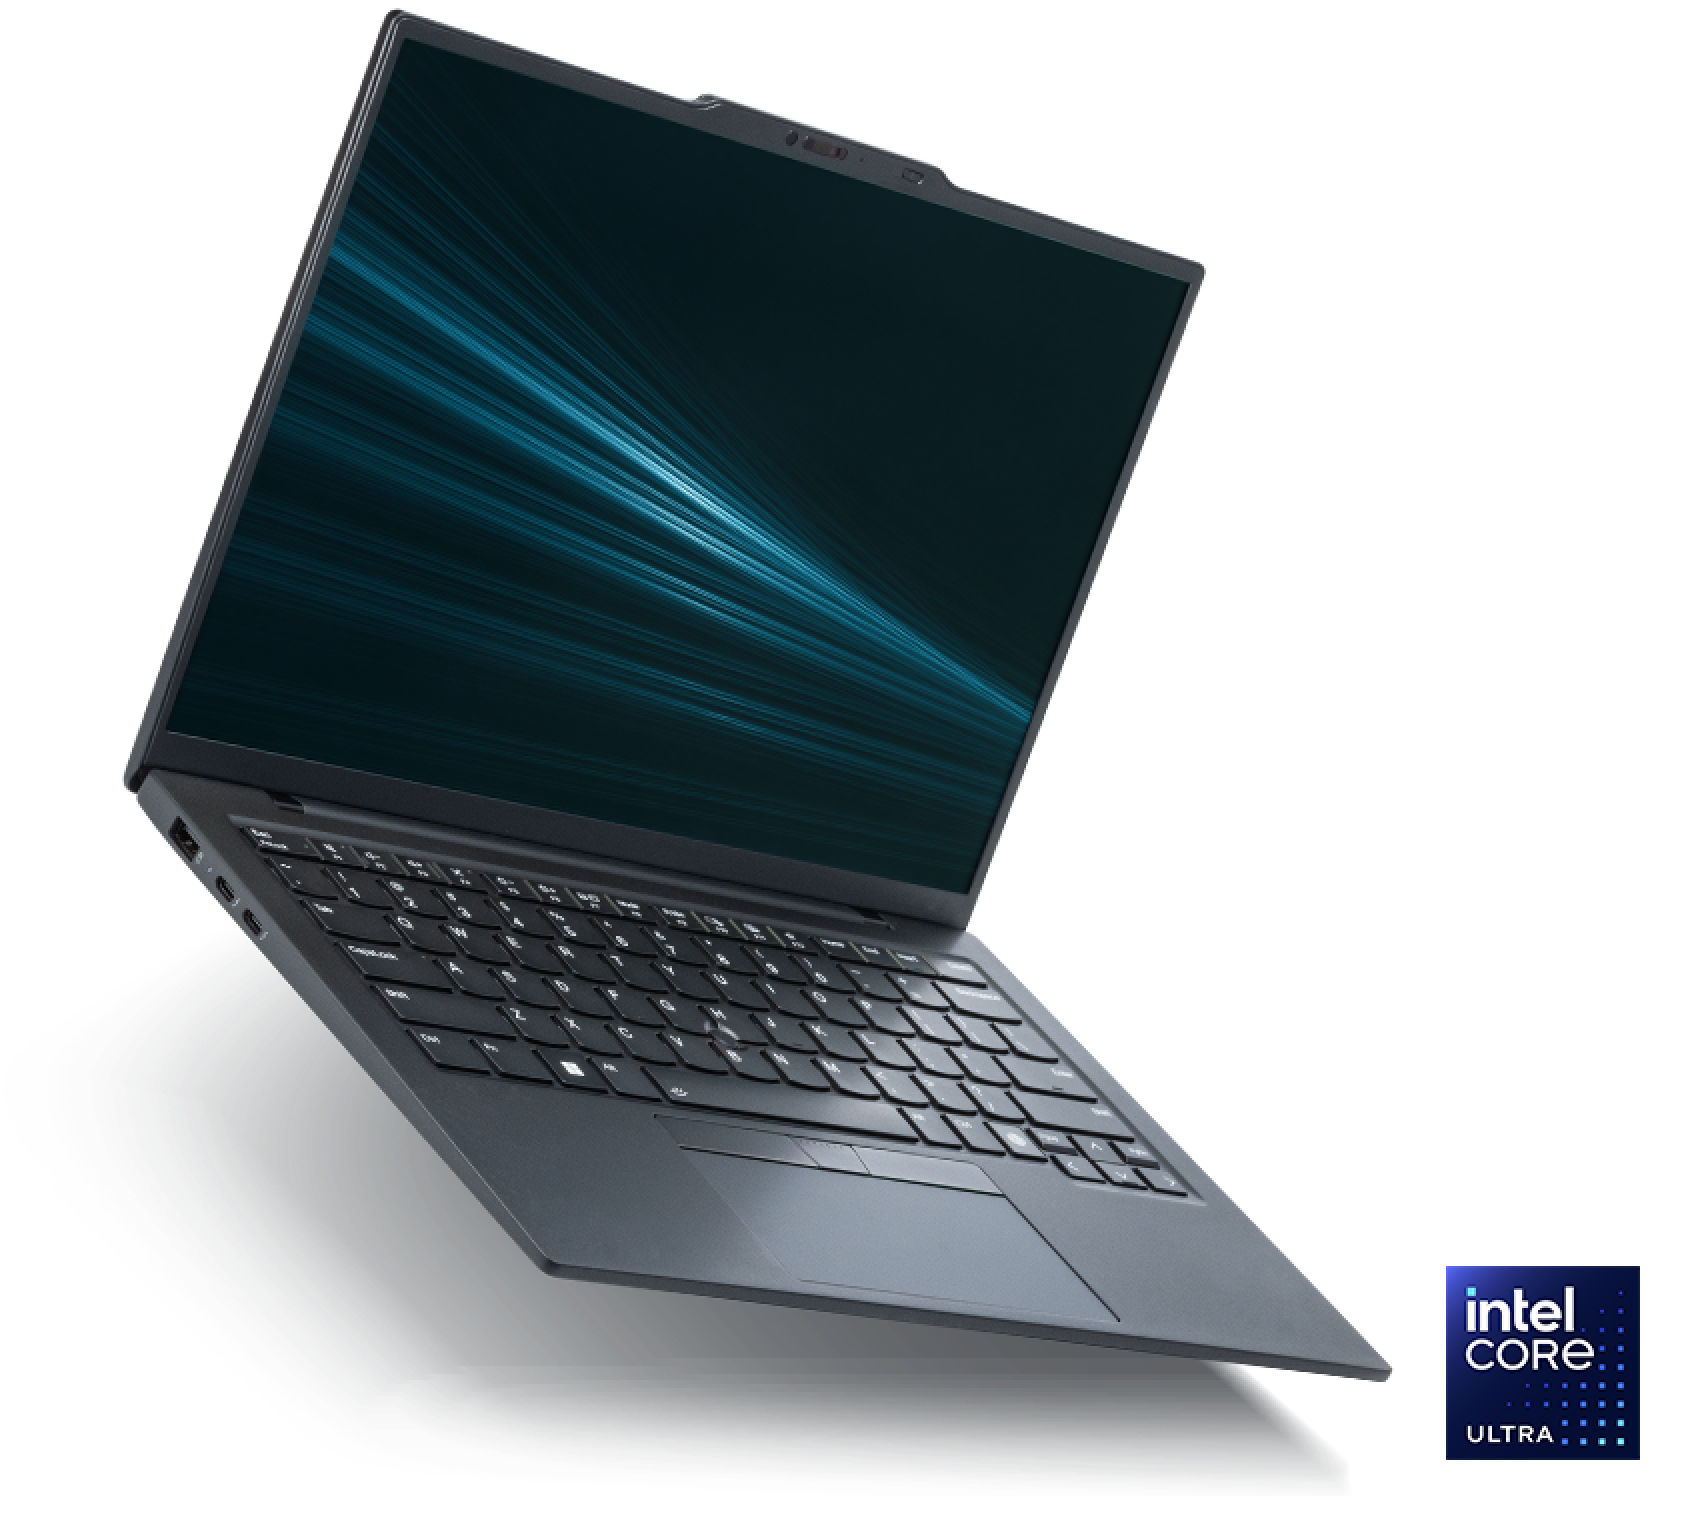 搭載 Intel® Core™ Ultra 處理器的 Intel® Evo™ Edition 筆記型電腦。